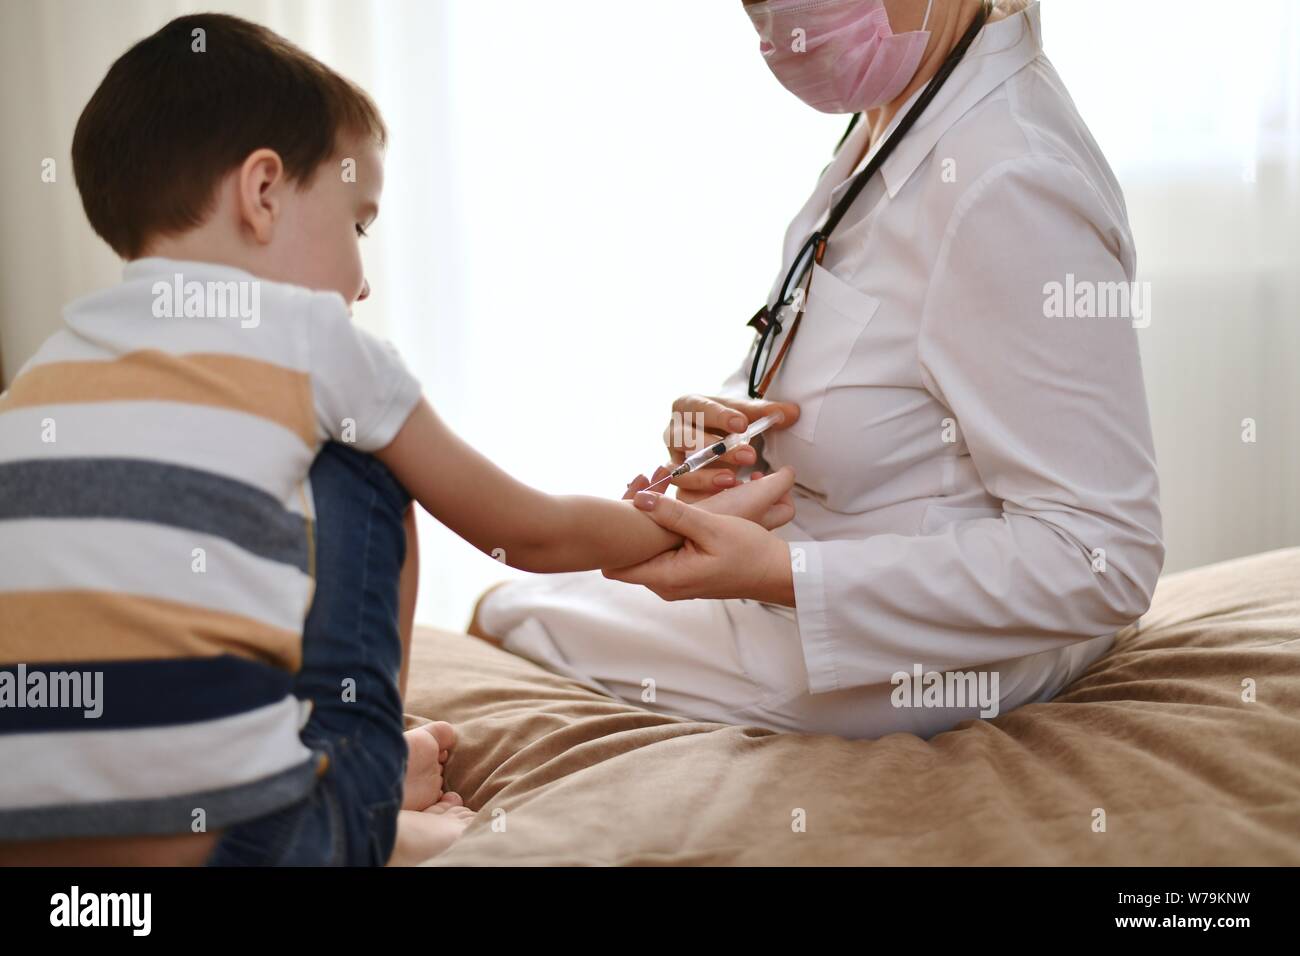 Le processus de réalisation d'un test de Mantoux pour un enfant. Un médecin avec une seringue dans ses mains se trouve en face d'un enfant. Banque D'Images